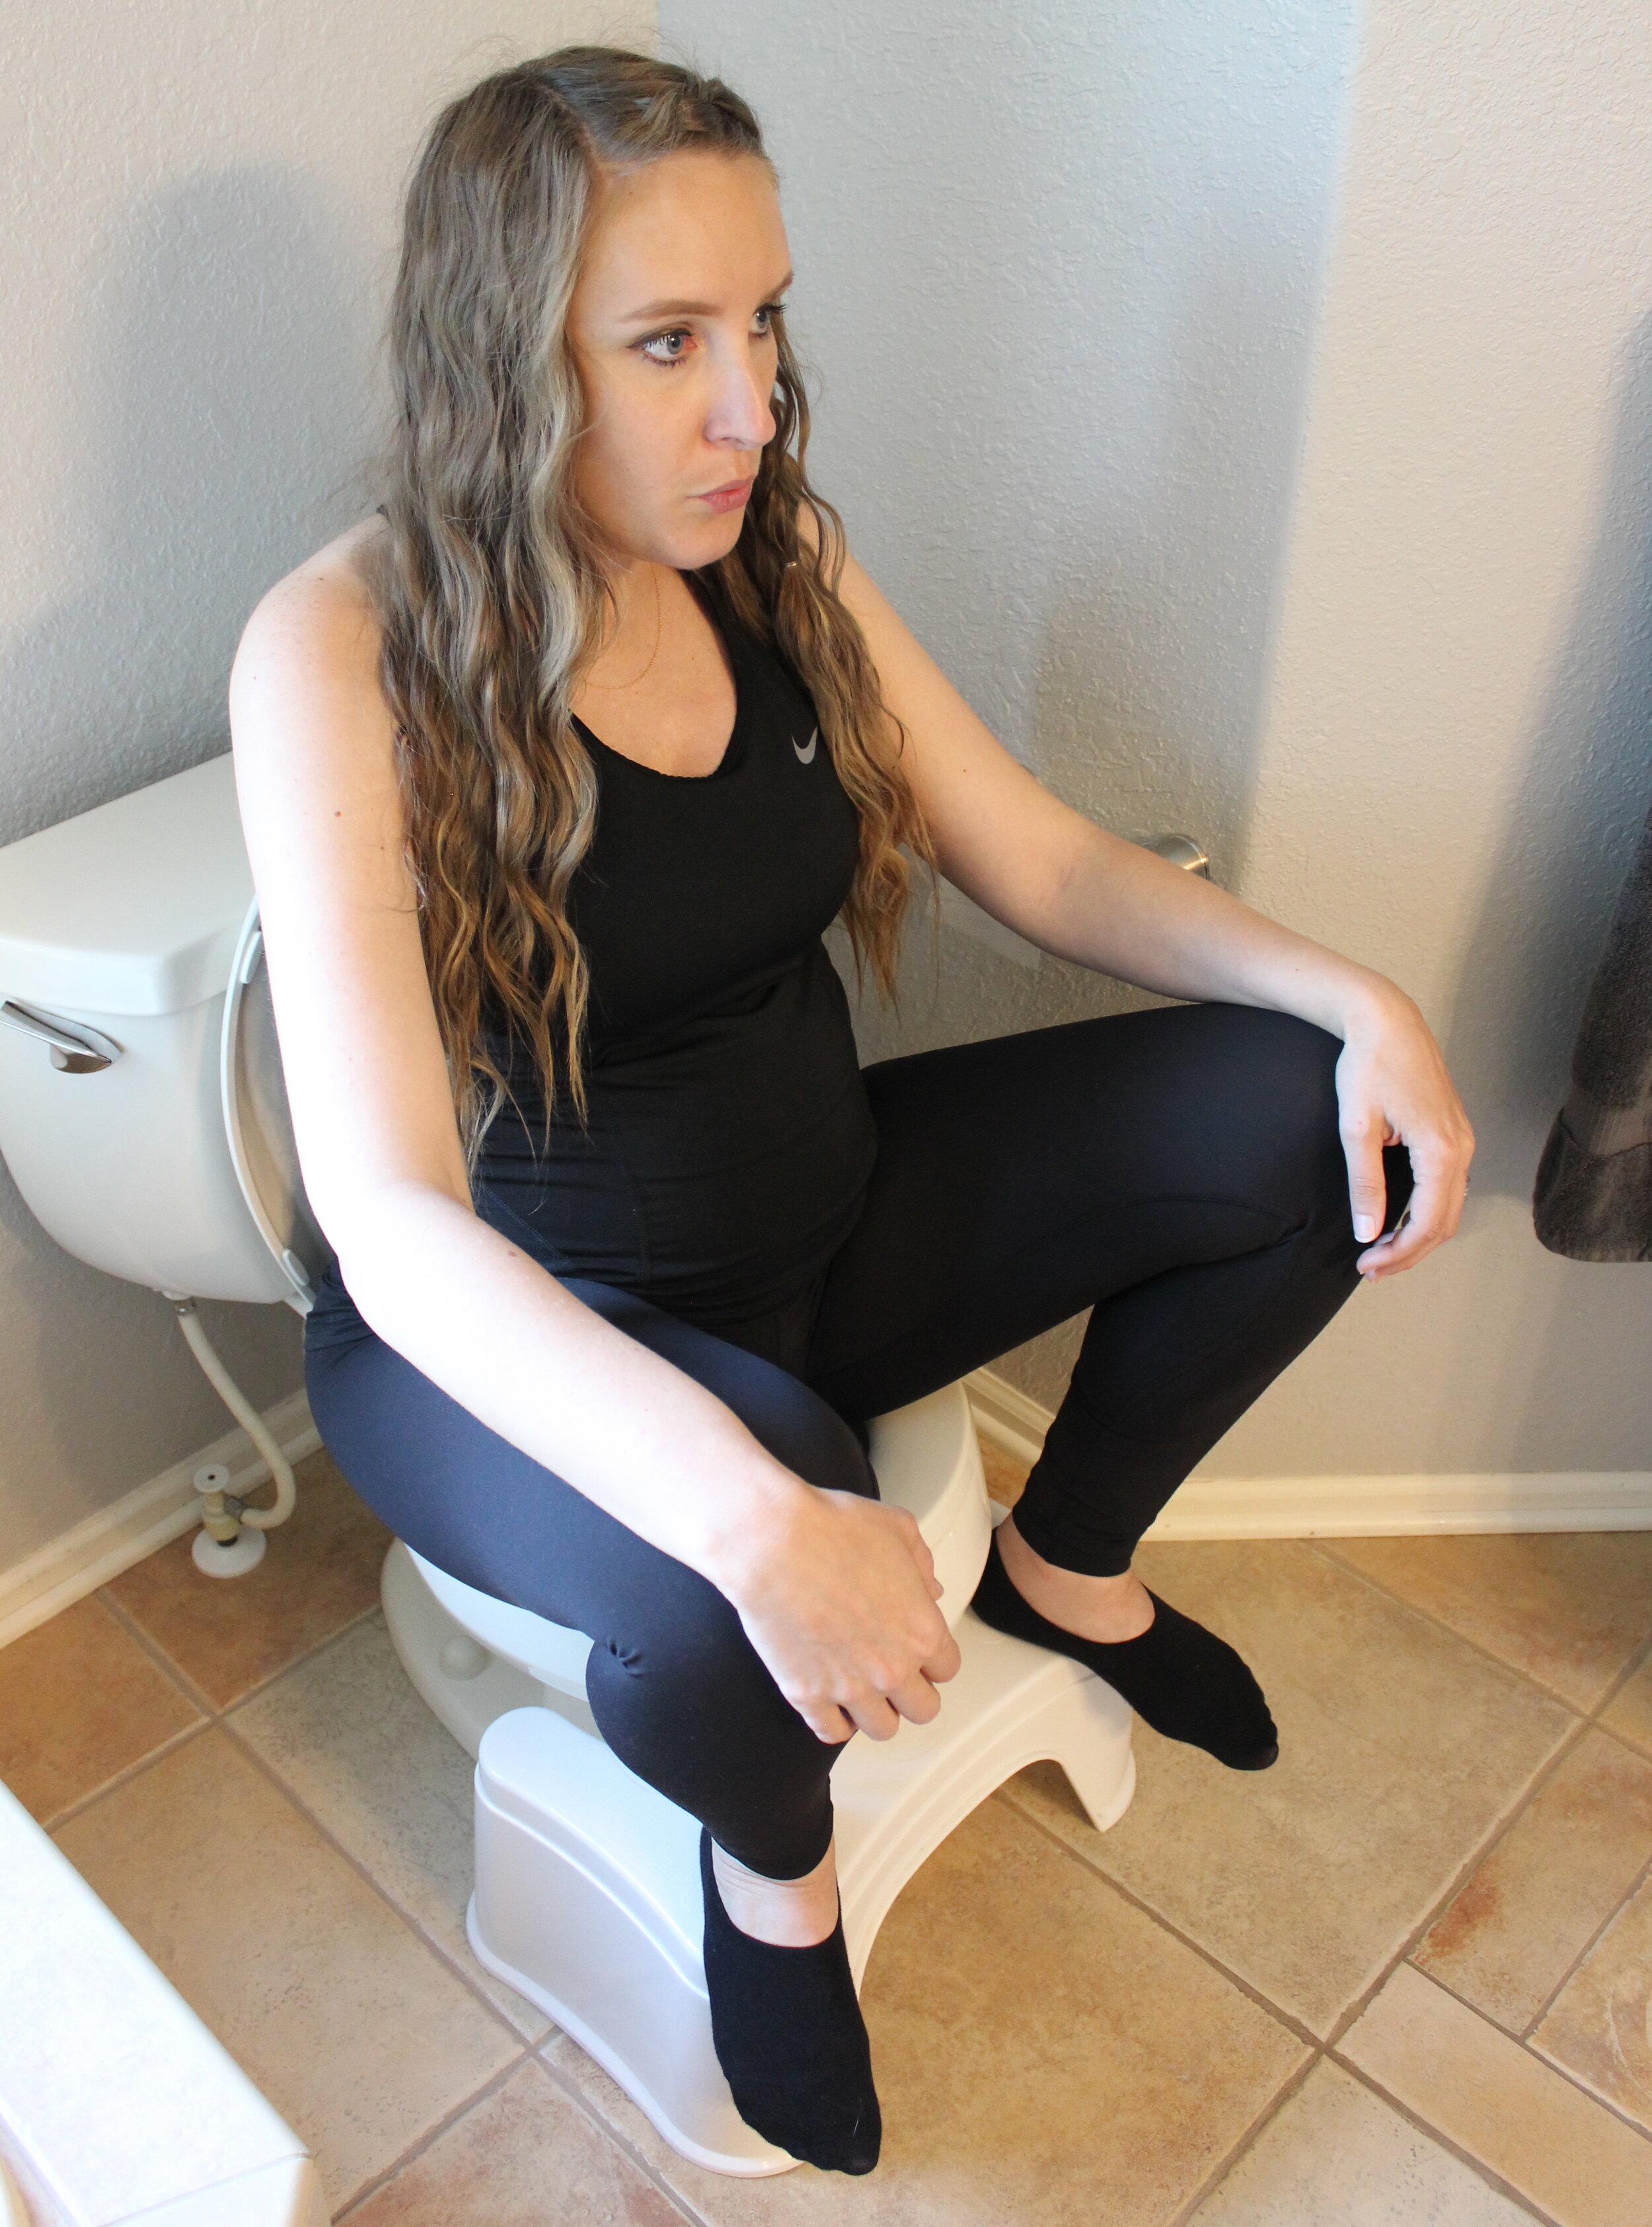 Women Pooping In Toilet